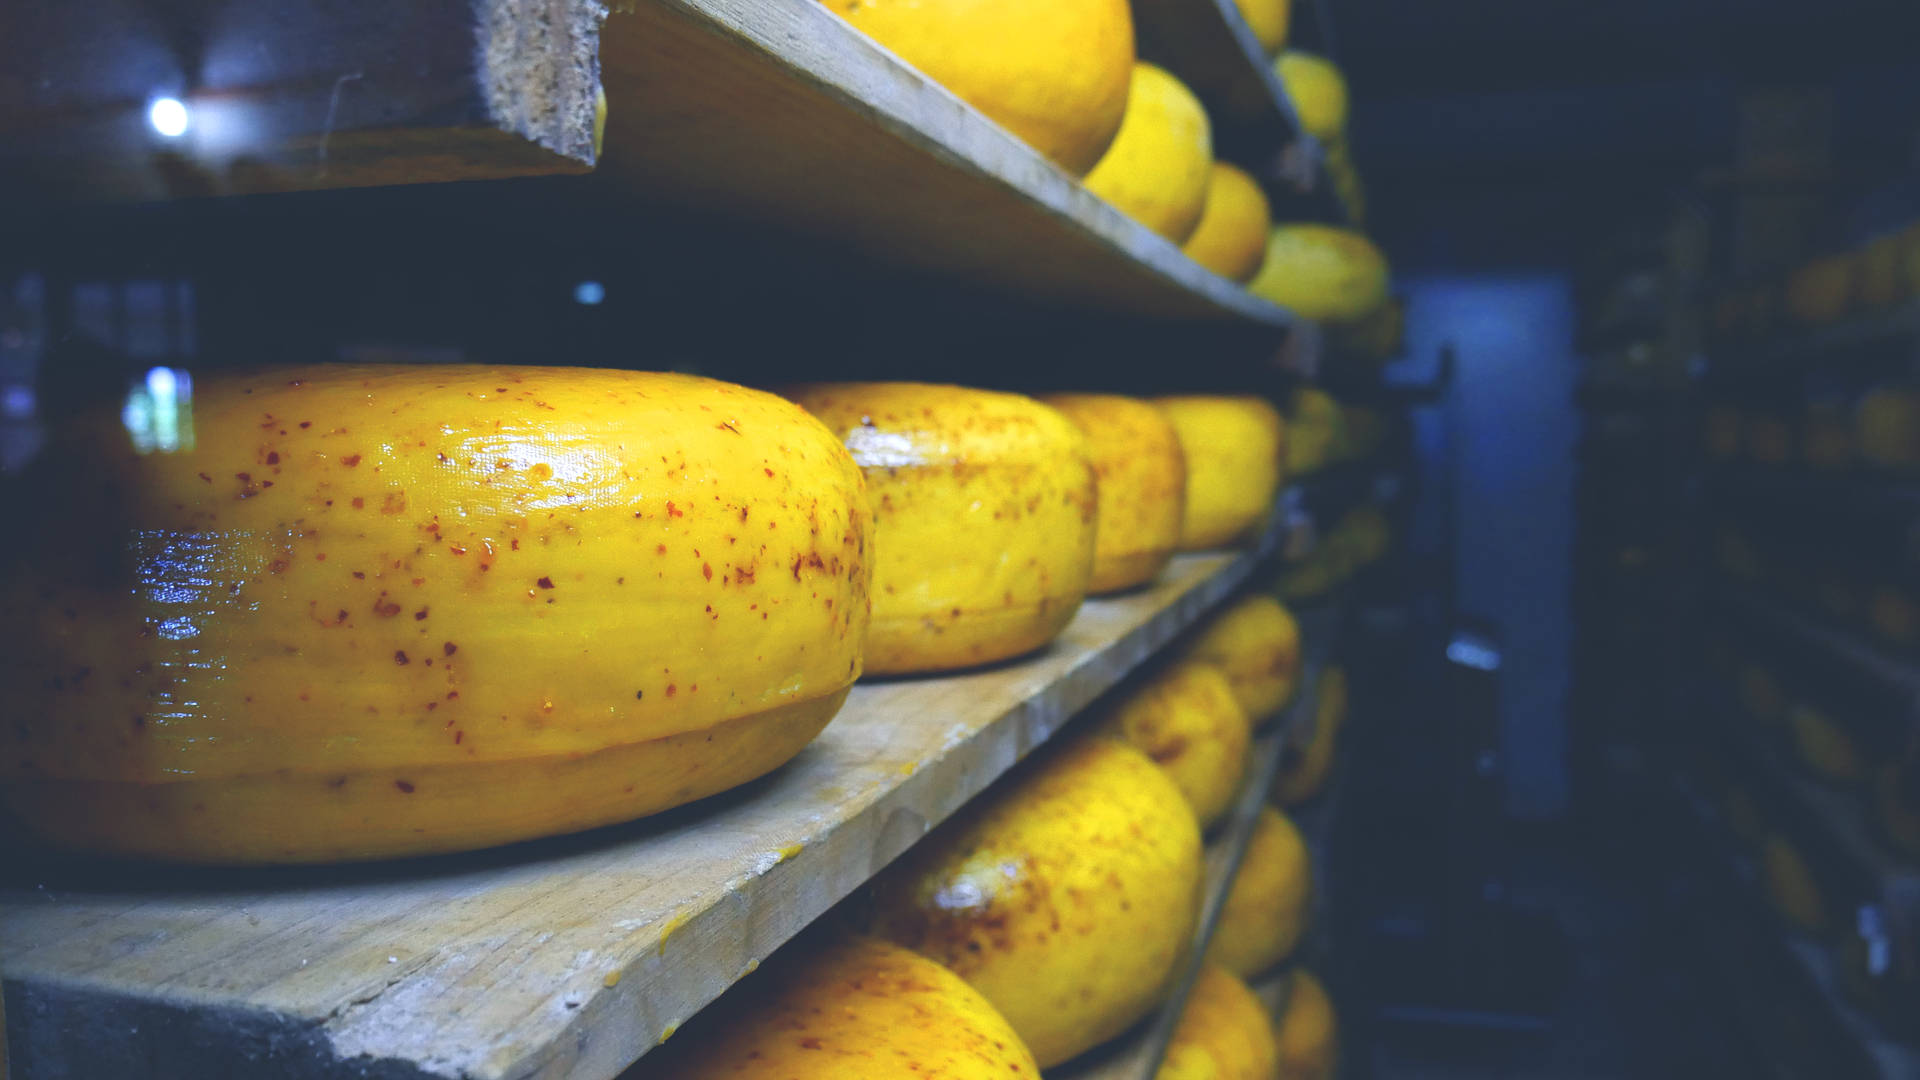 Round Cheese Storage Room